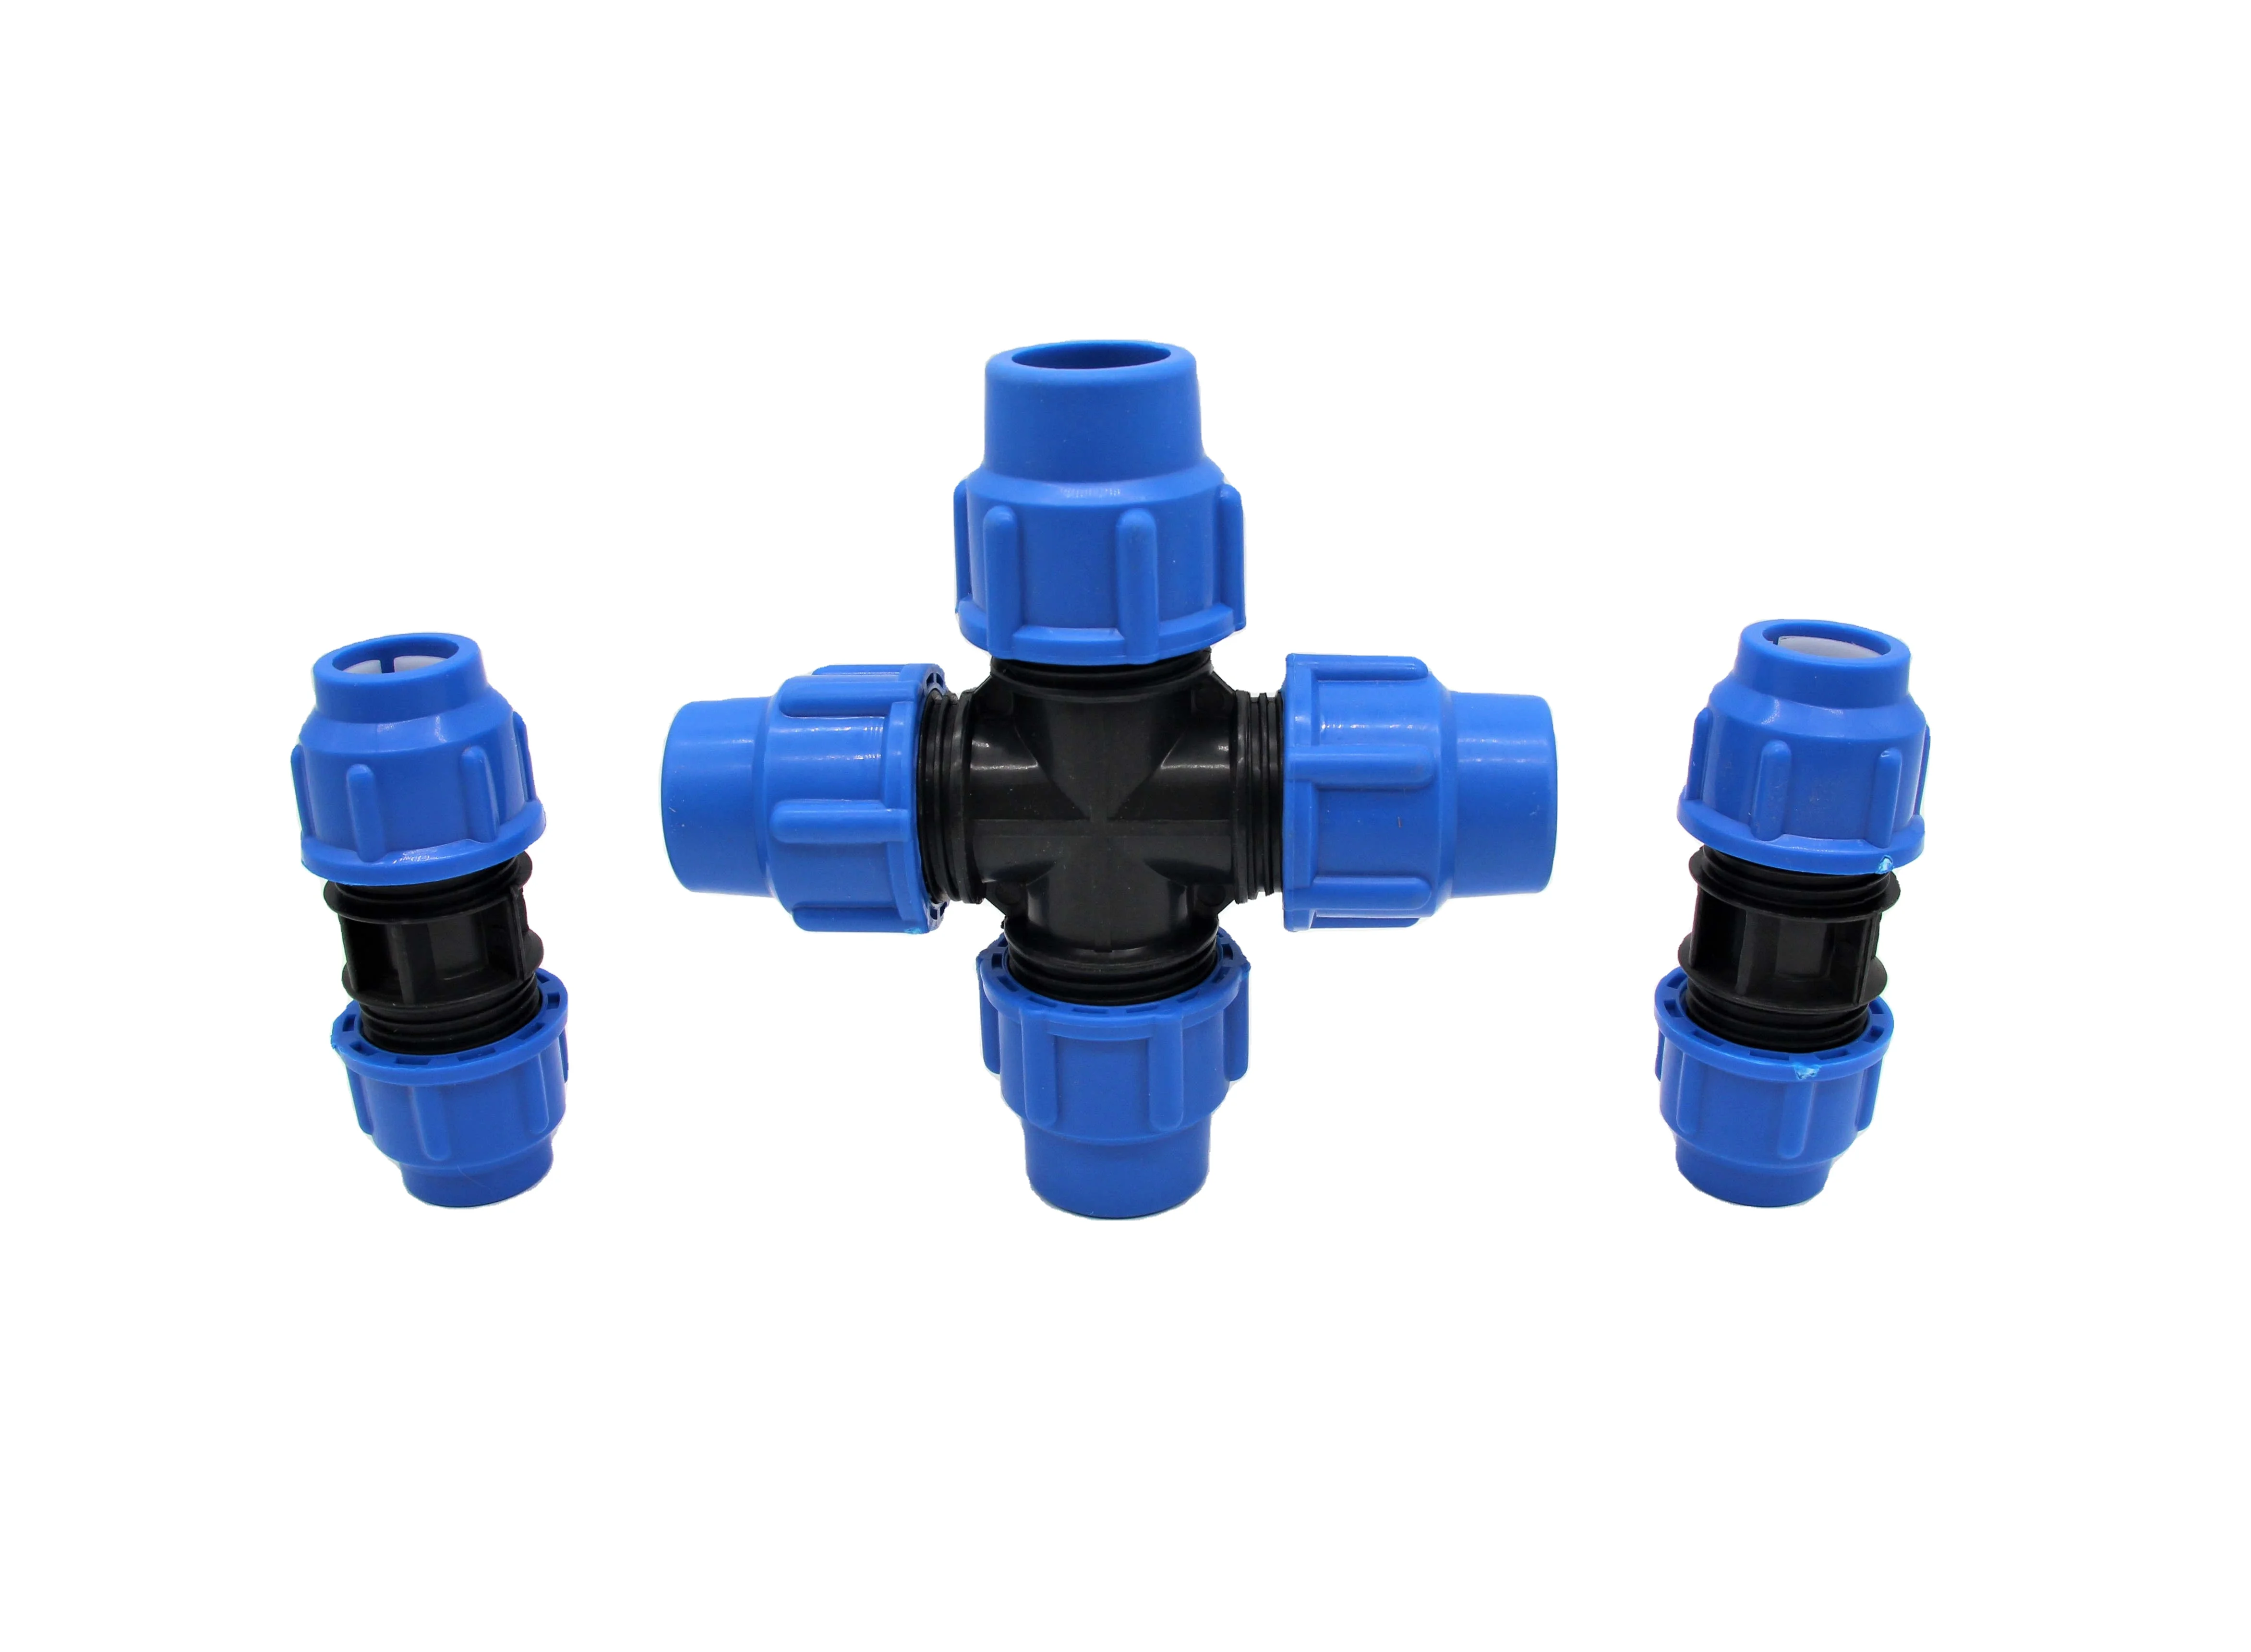 
HDPE трубы и фитинги для водоснабжения Dn20-1200mm картонная упаковка синие компрессионные фитинги Соединительные линии обеспечивают образцы 